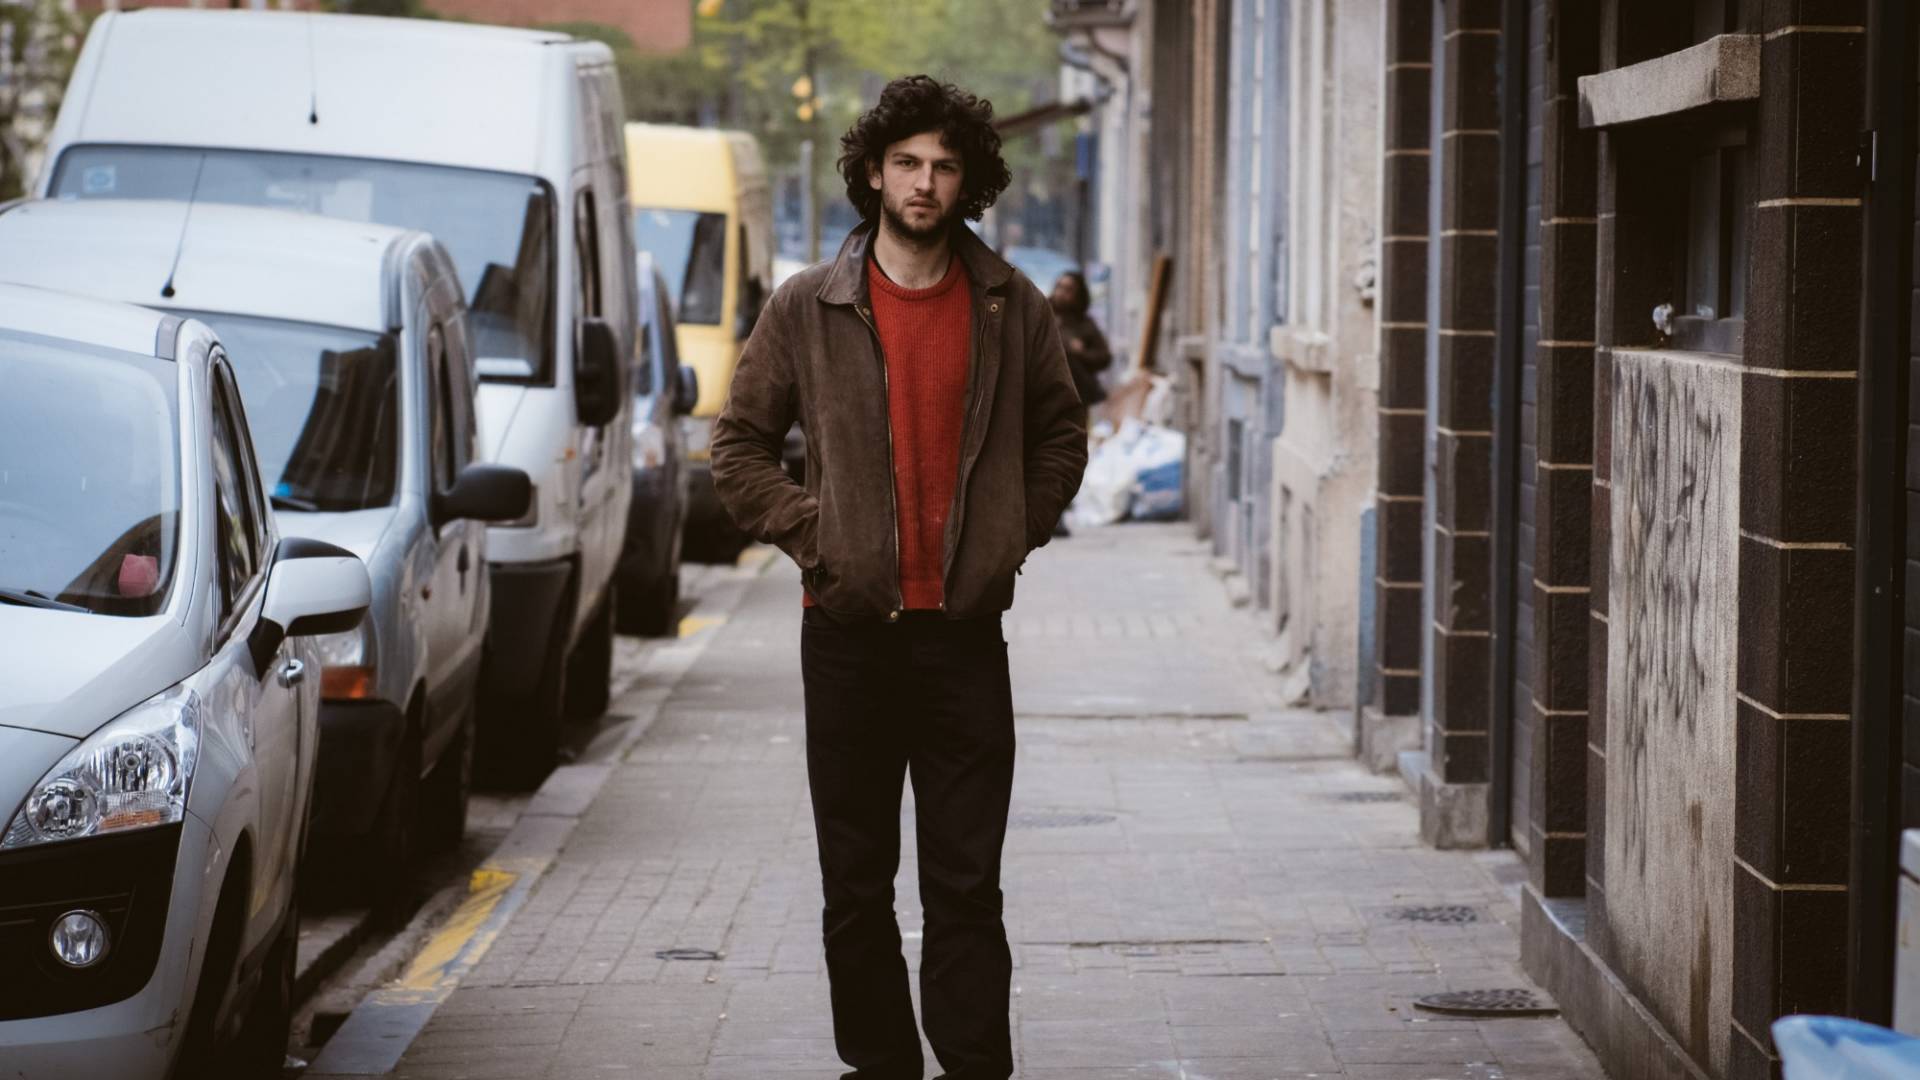 Andriu Deplazes schlendert, die Hände in die Jackentasche haltend, durch die Strassen von Brüssel.